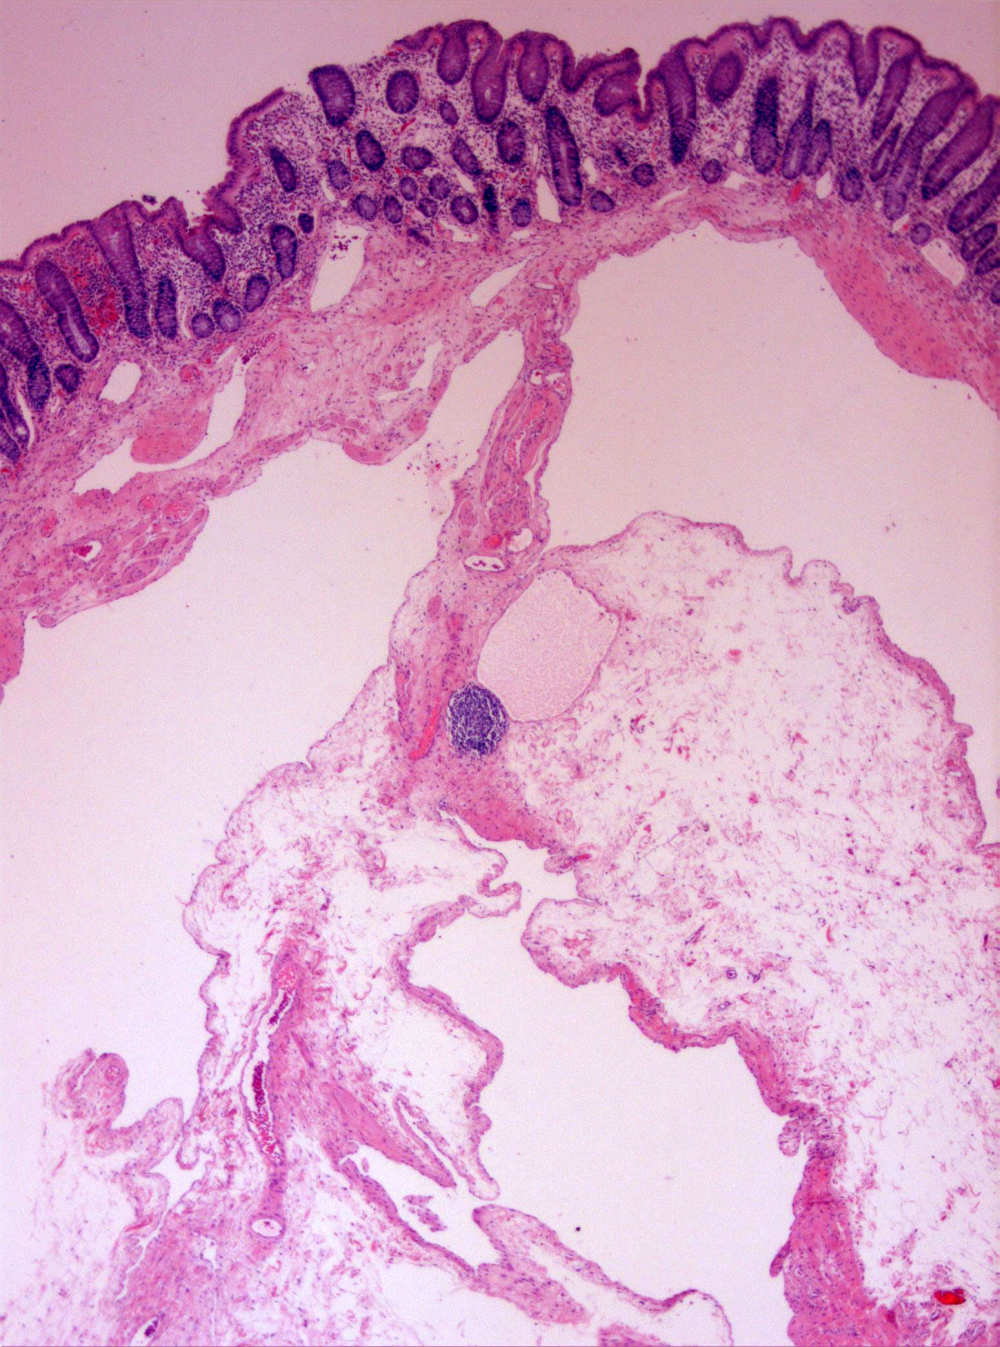 Imagen de Plipo sesil en colon ascendente/Sessile polyp in ascendant colon.